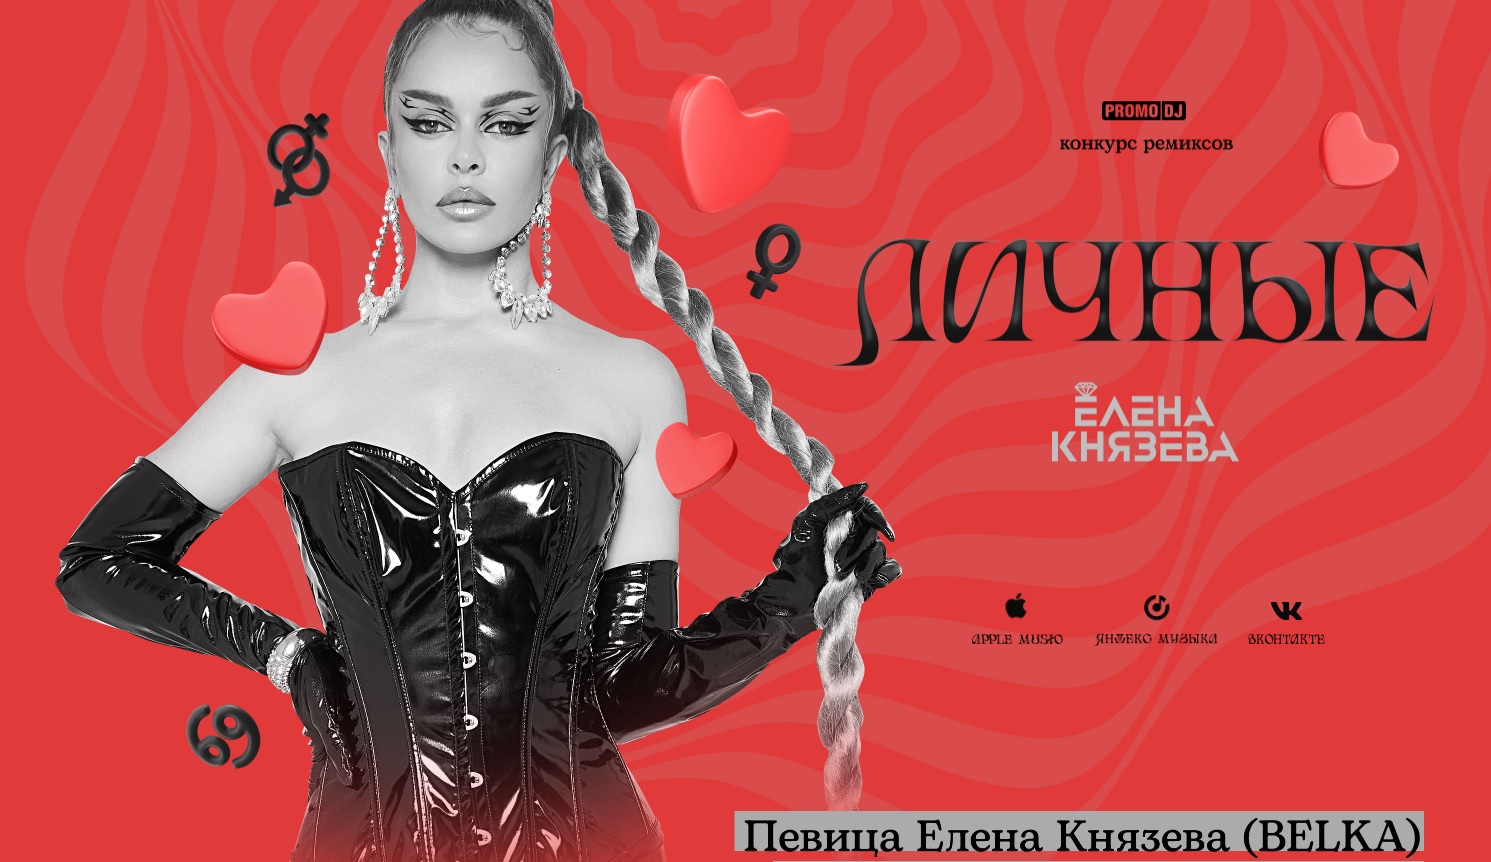 Елена Князева - Наказана (Serg VeanaraK Remix)